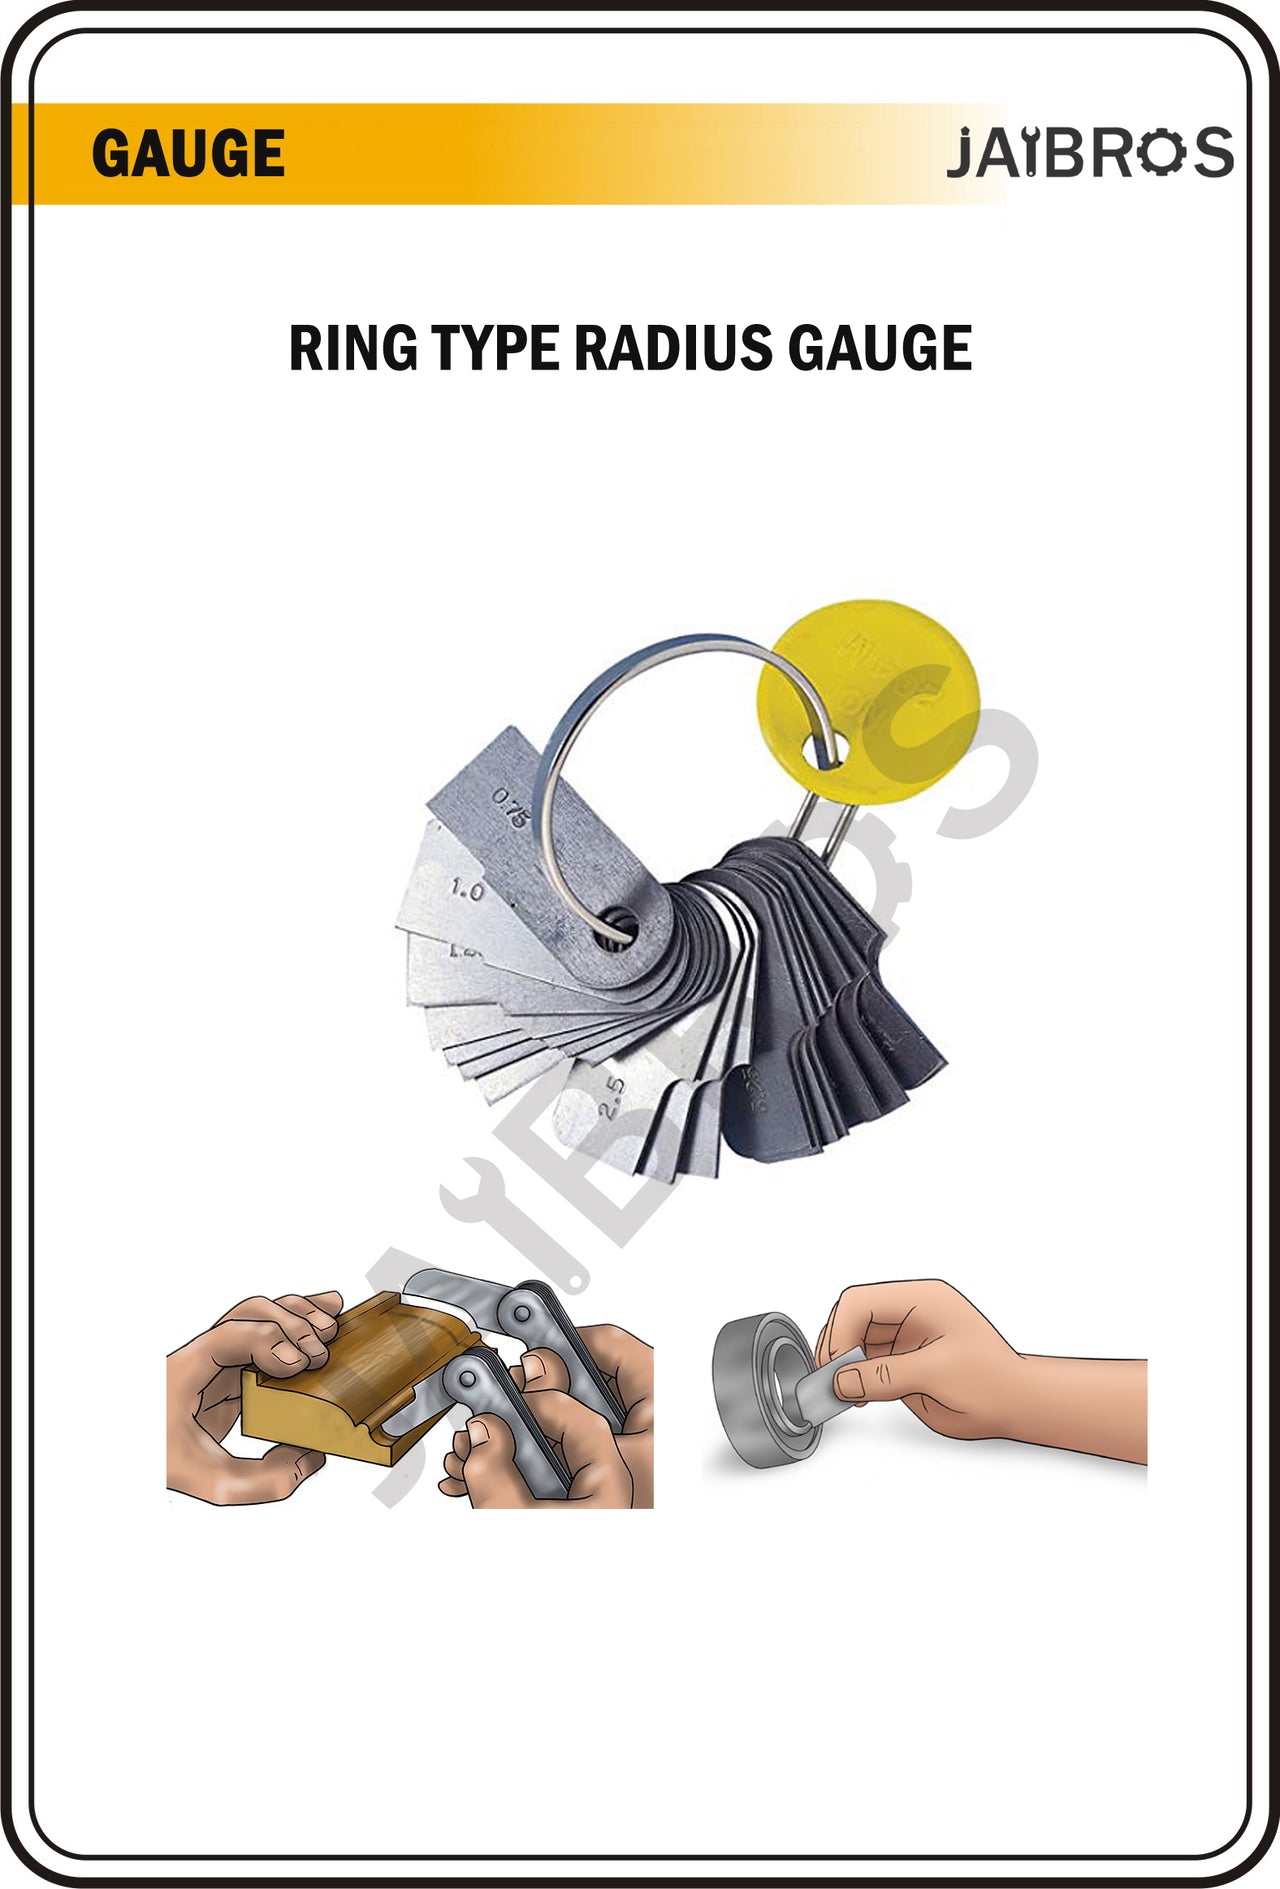 Radius gauge ring type 0.75 TO 5 MM